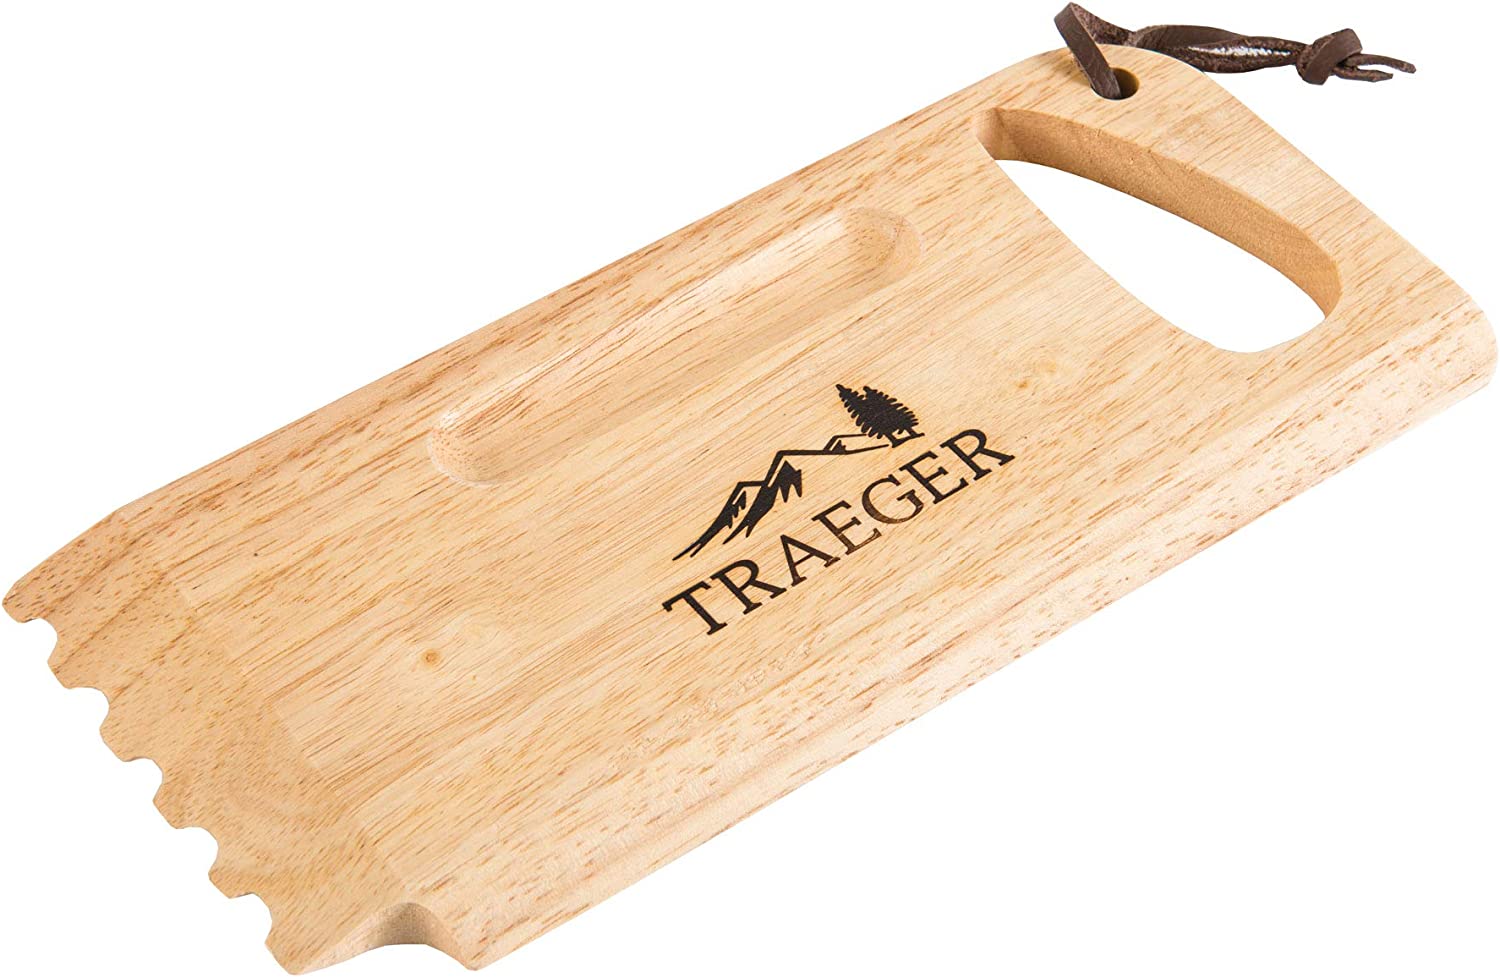 Traeger Grillrostschaber aus Holz